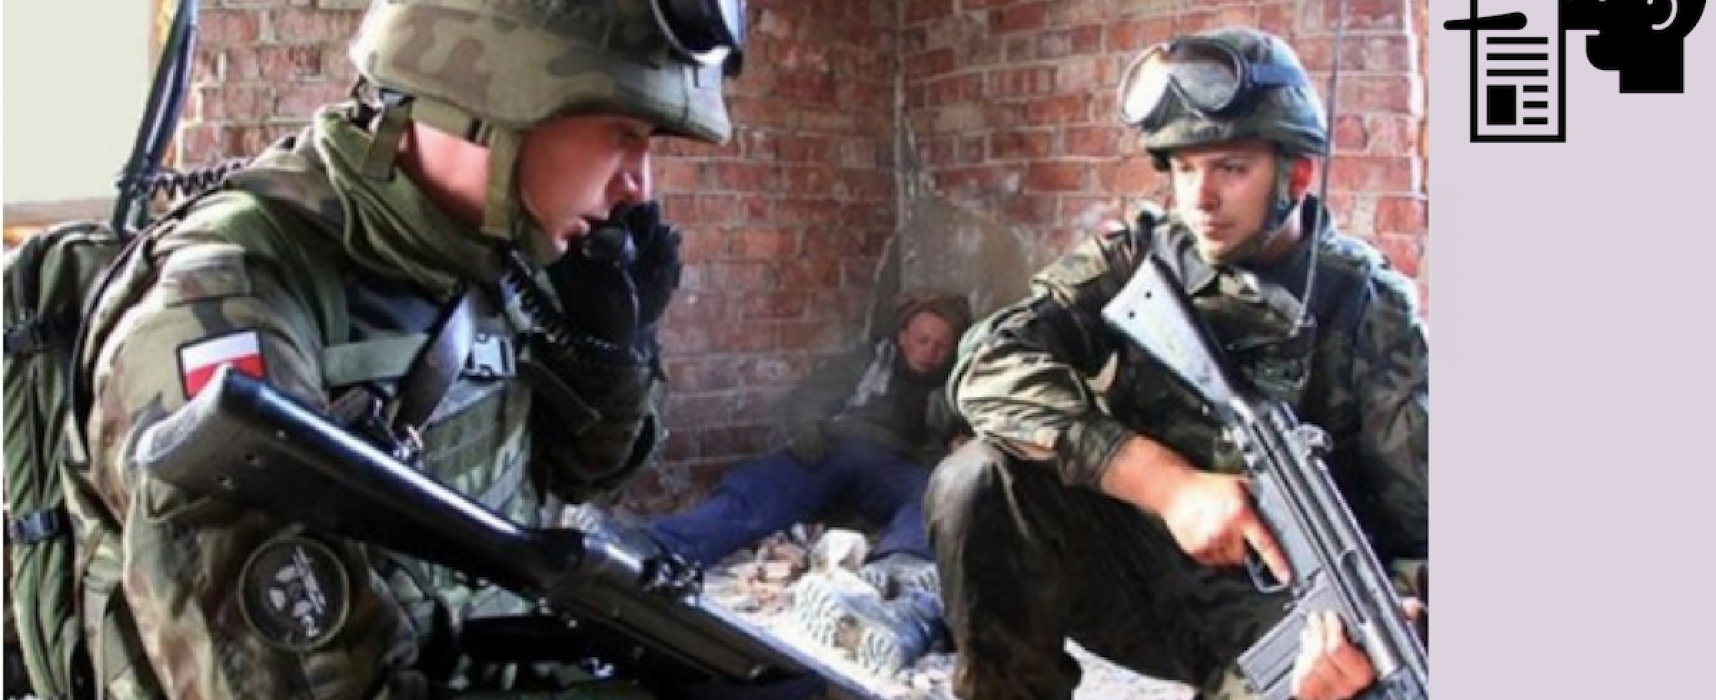 Falso: Durante la crisis en el estrecho de Kerch, el ejército ucraniano bom...